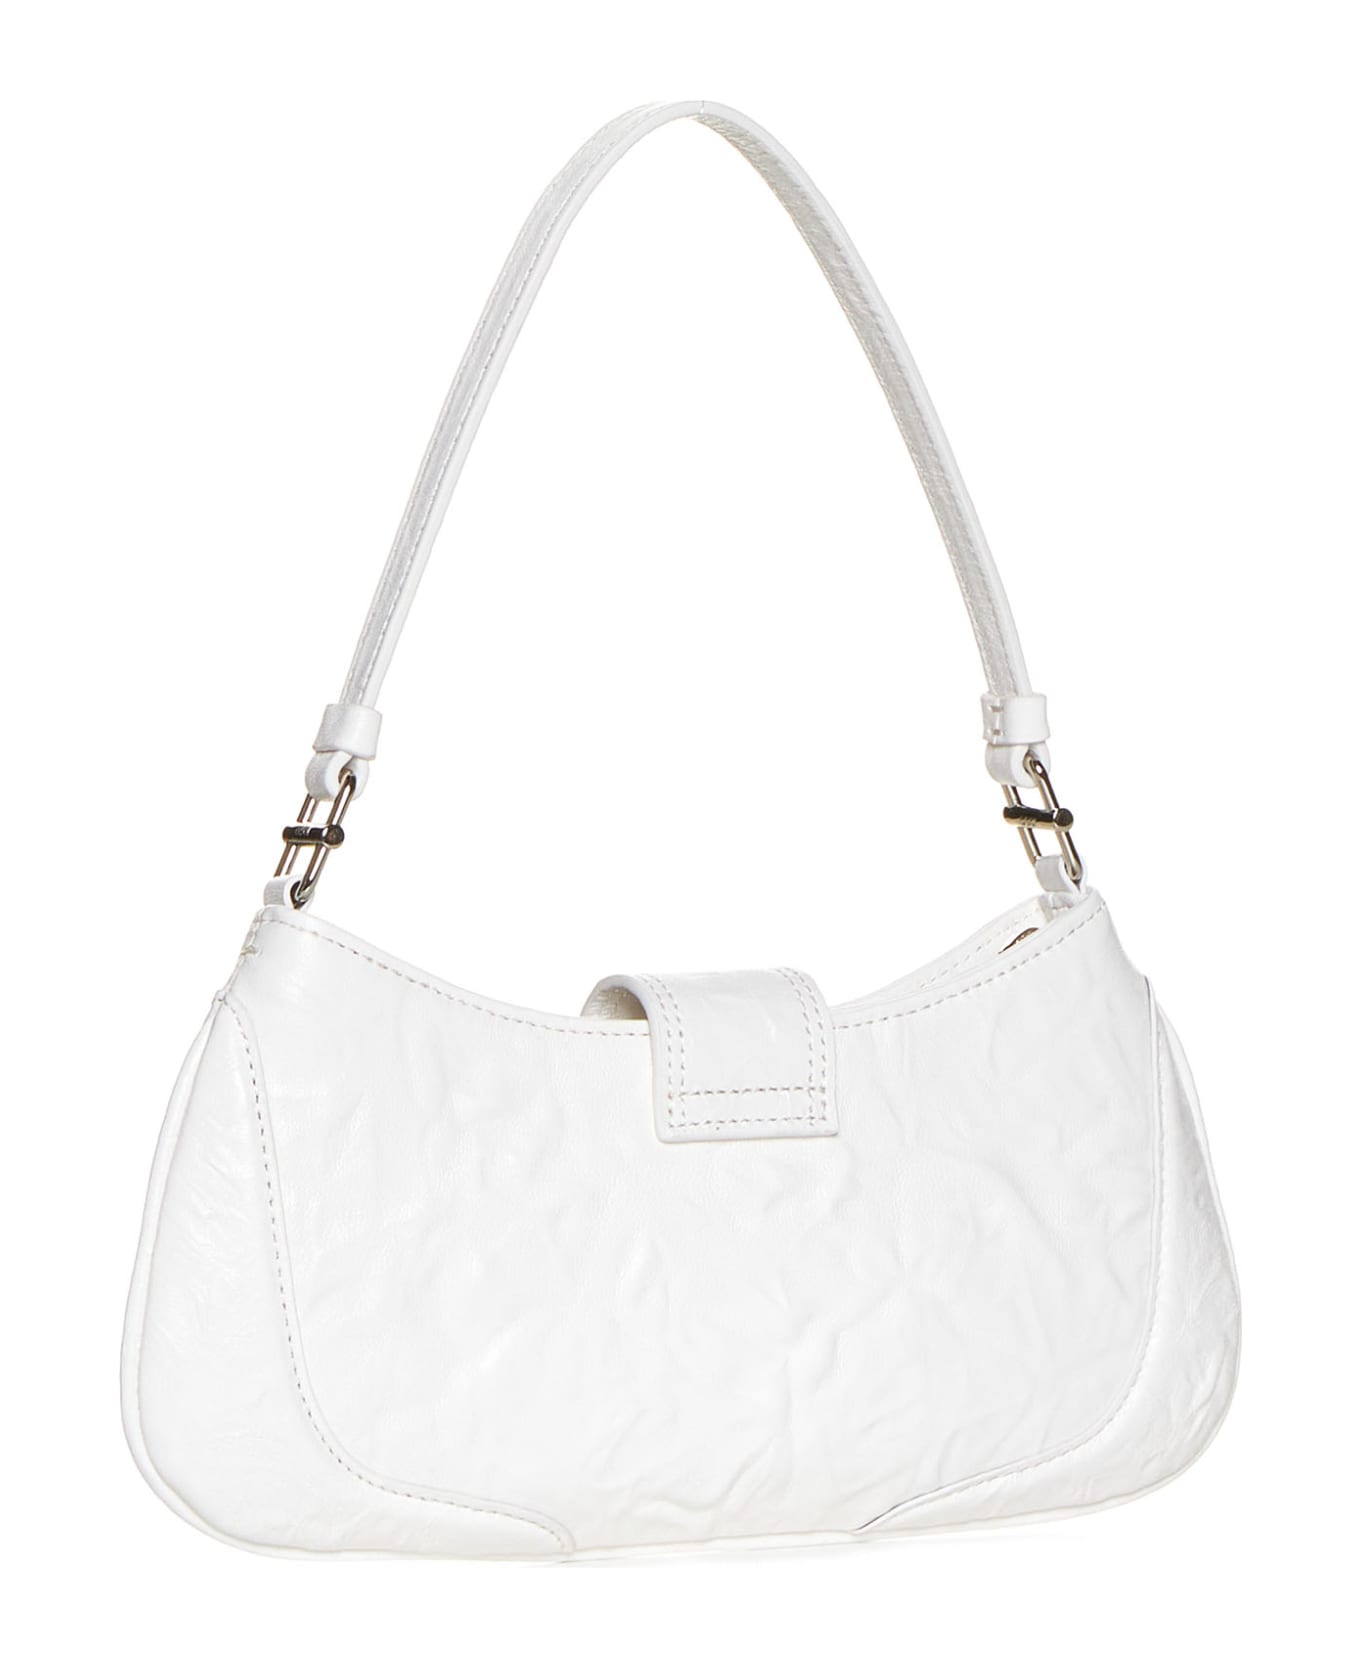 OSOI Shoulder Bag - Crinkle white